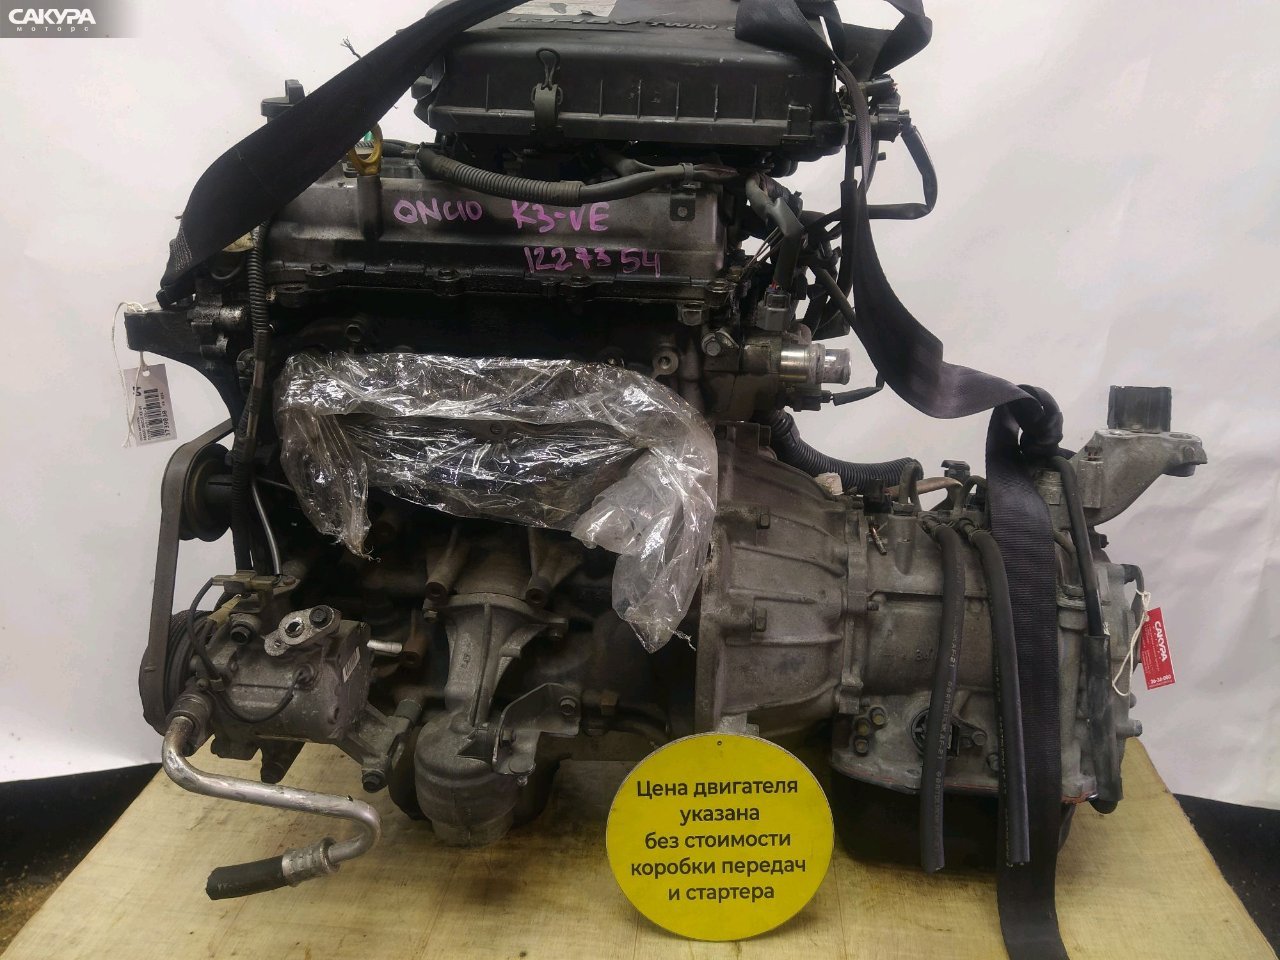 Двигатель Toyota Passo QNC10 K3-VE: купить в Сакура Красноярск.